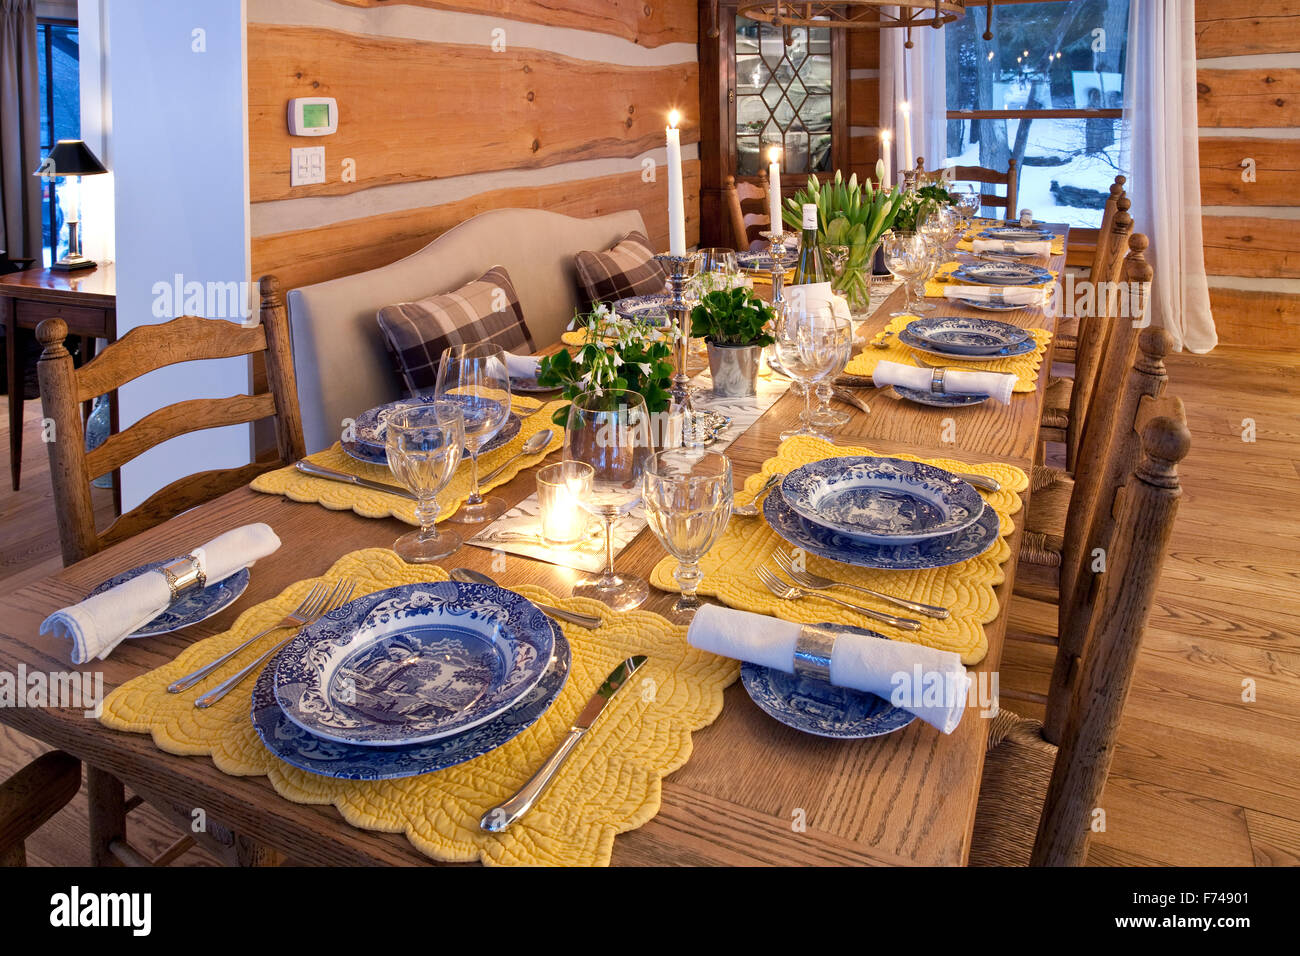 Table de salle à manger dans une maison en bois rond Banque D'Images